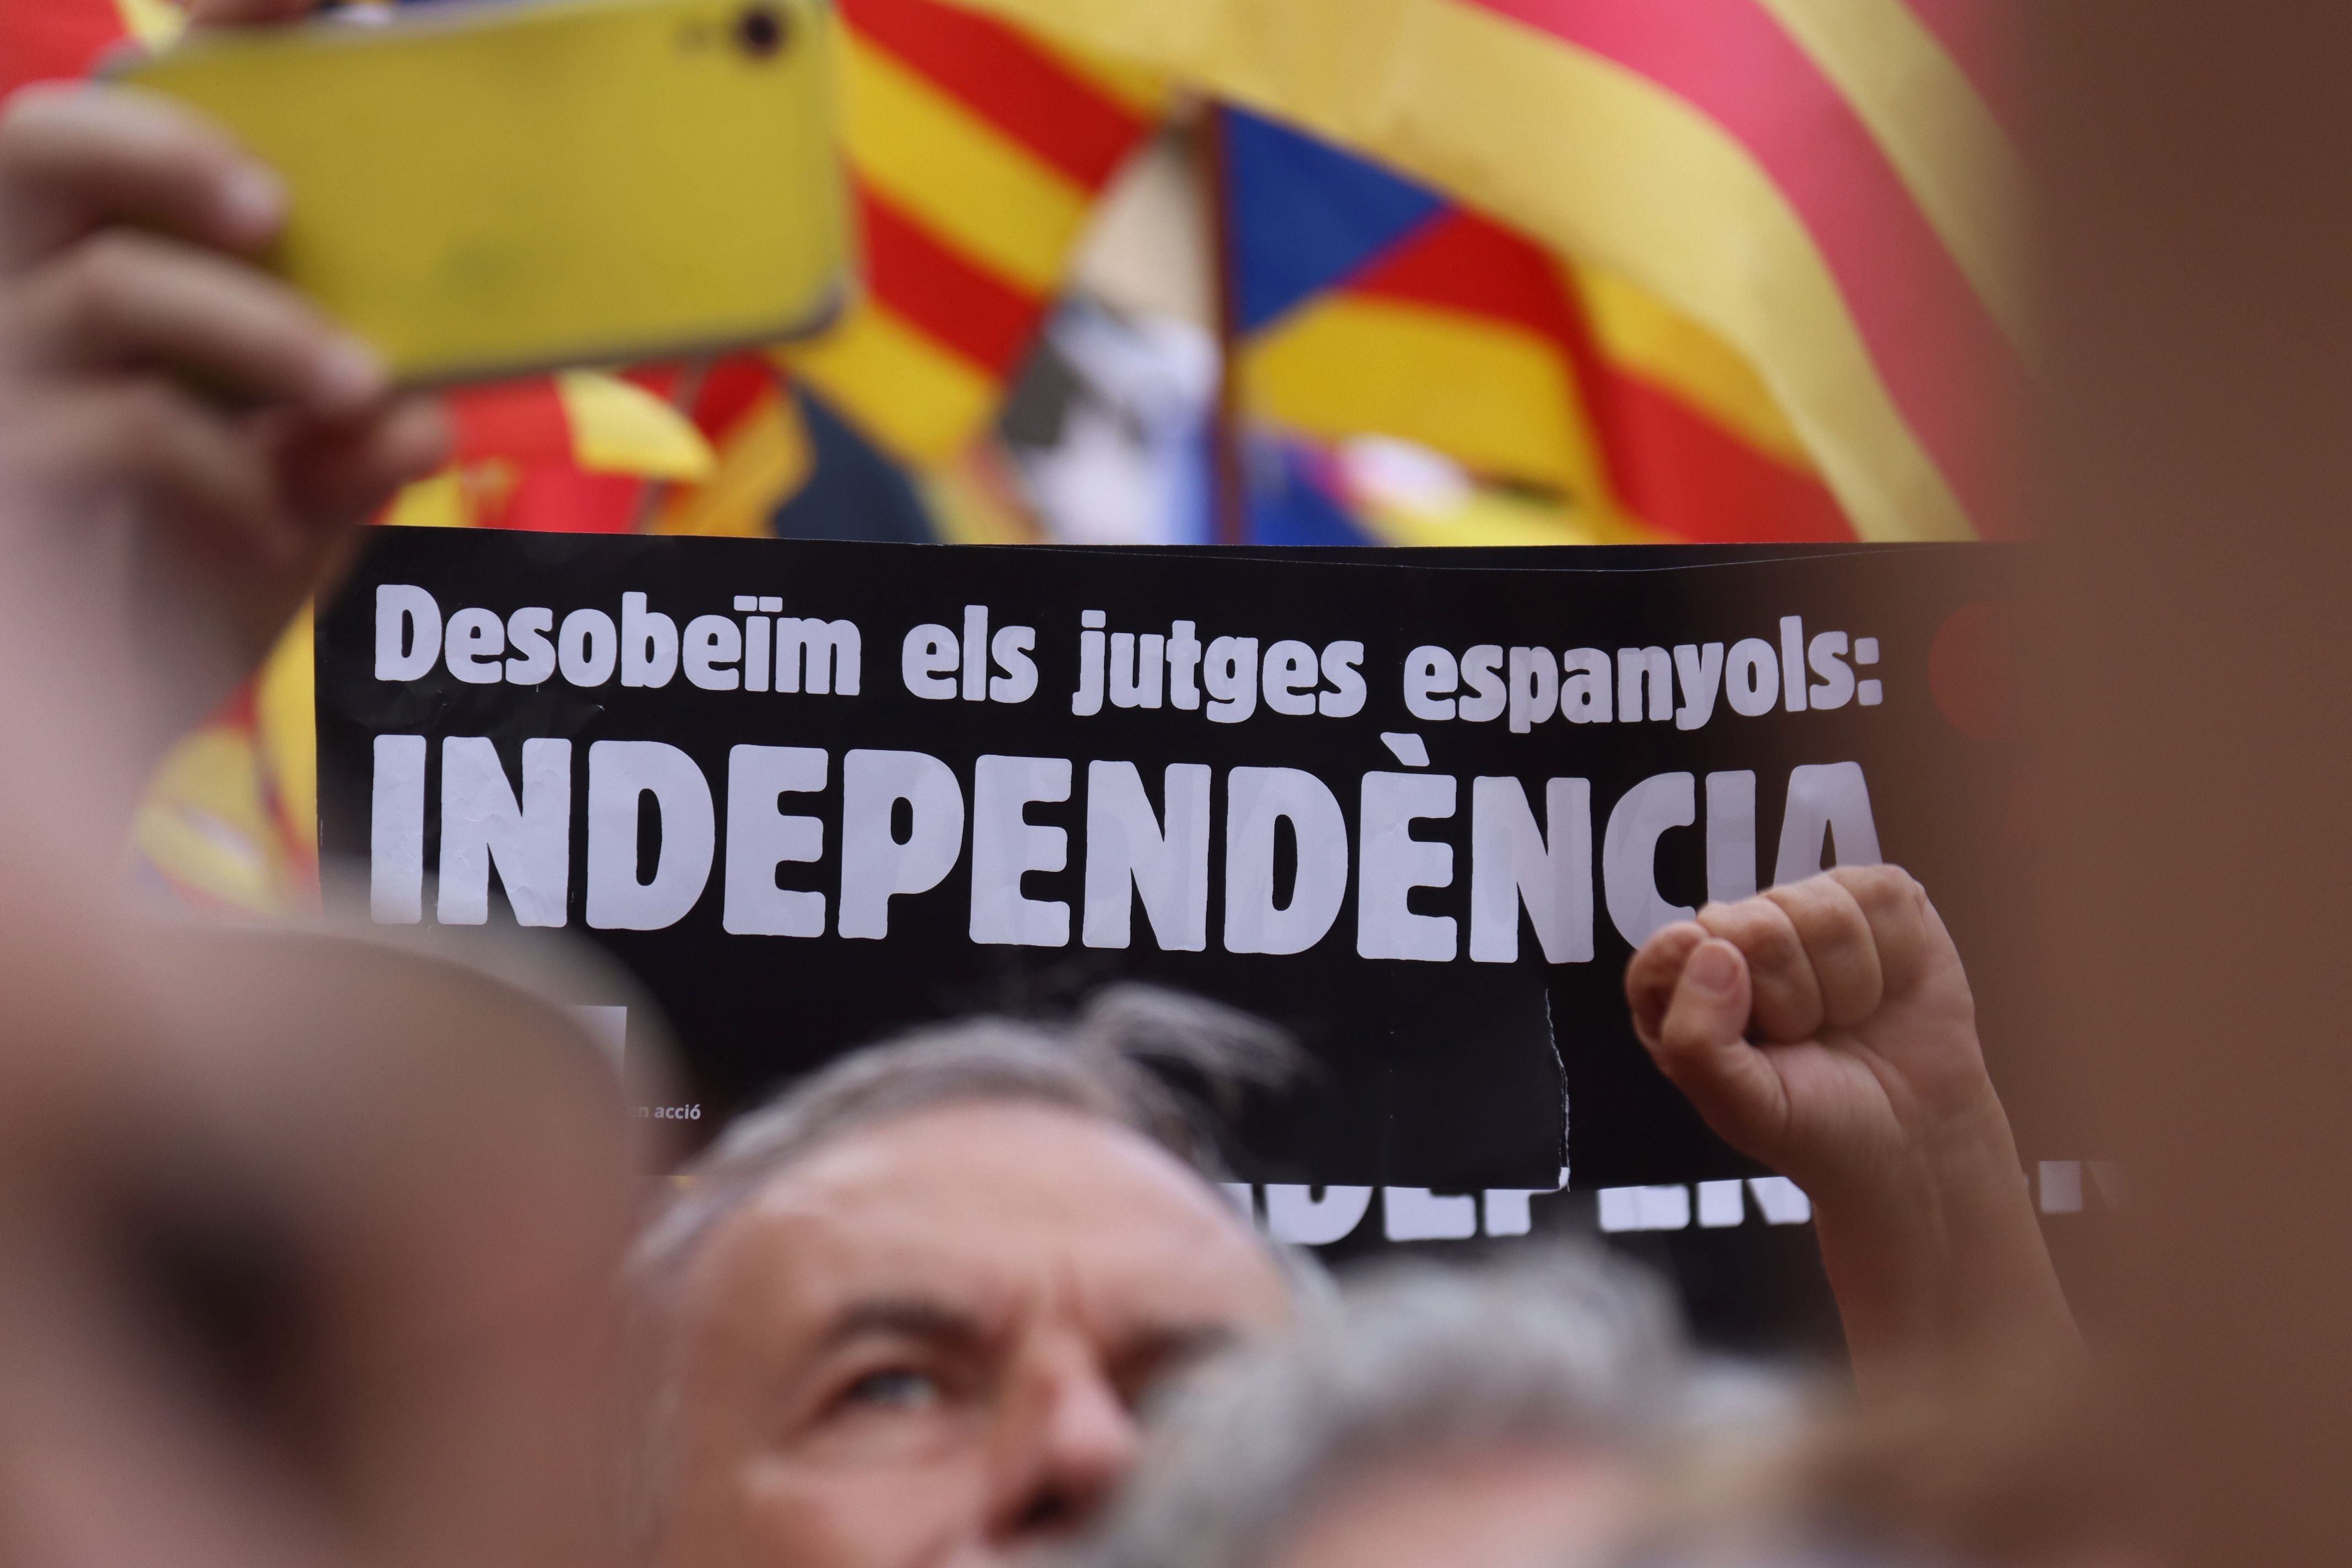 L'objectiu principal de l'agenda és que el Parlament presenti, a les corts espanyoles, una petició de reforma constitucional per exigir la independènci